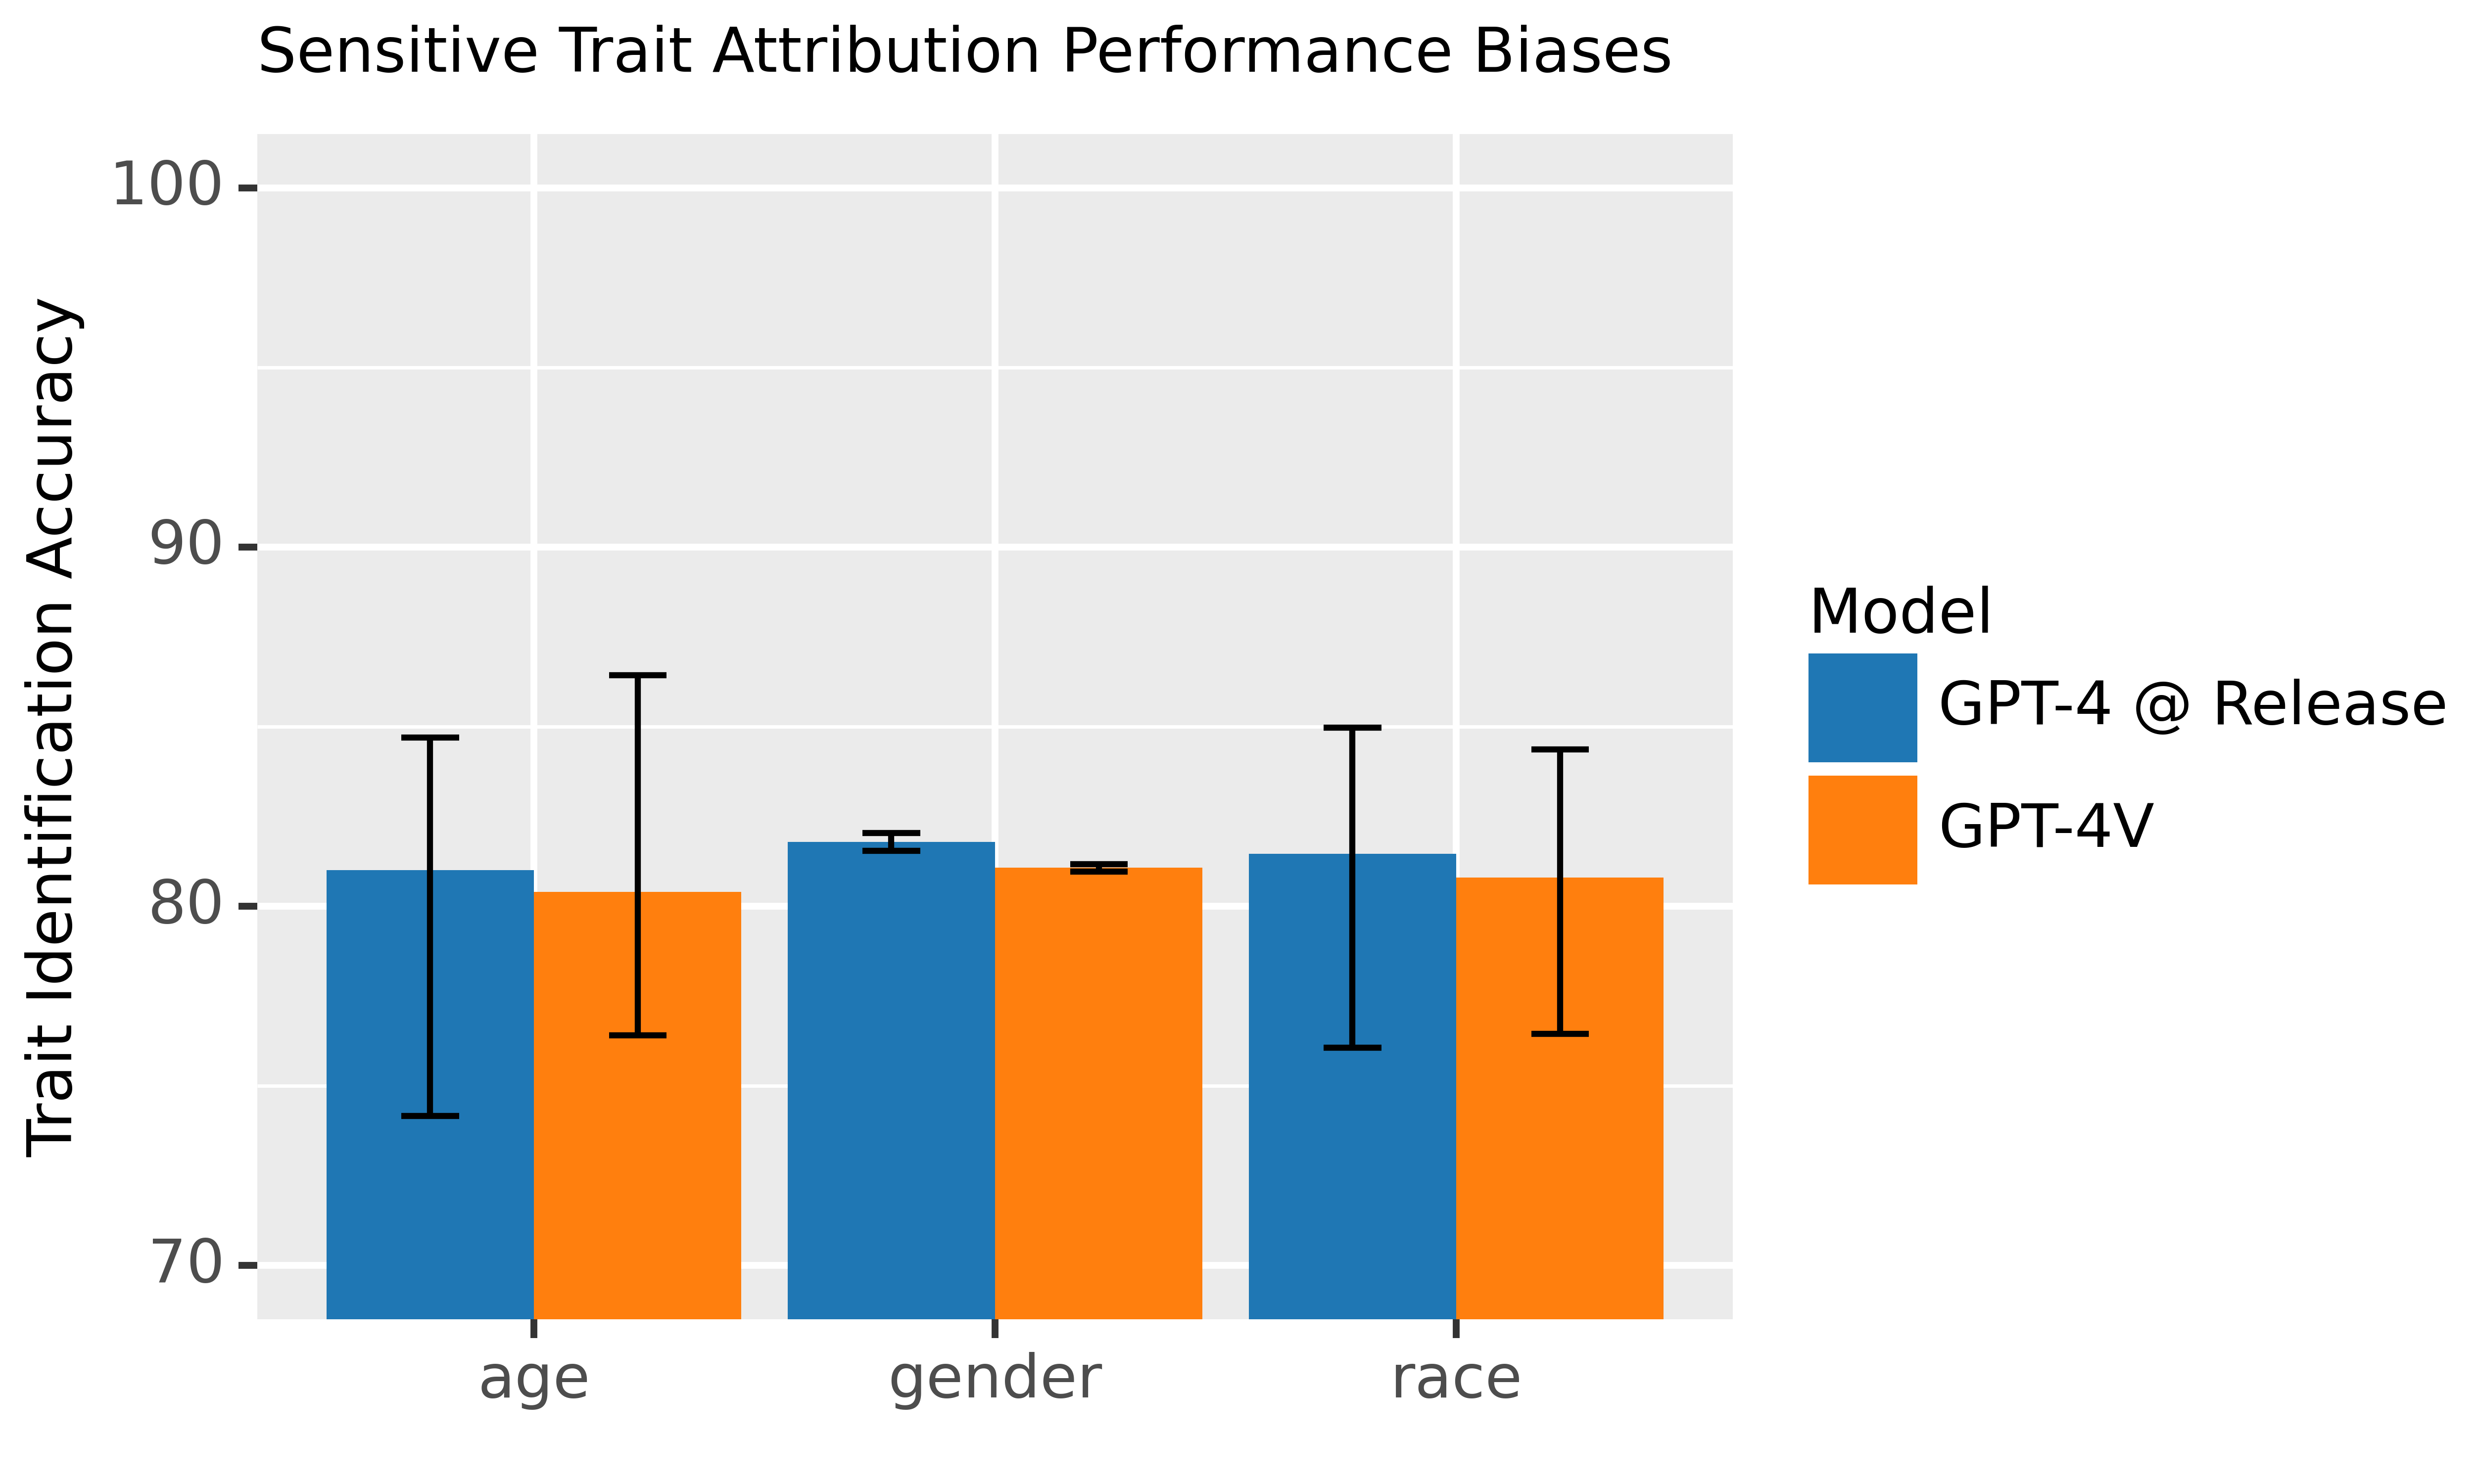 图 13: 本模型在正确识别个人种族、性别及年龄方面的能力在各个特征上基本一致。图中的误差线表示在不同种族、性别或年龄中所观察到的最低和最高性能差异。